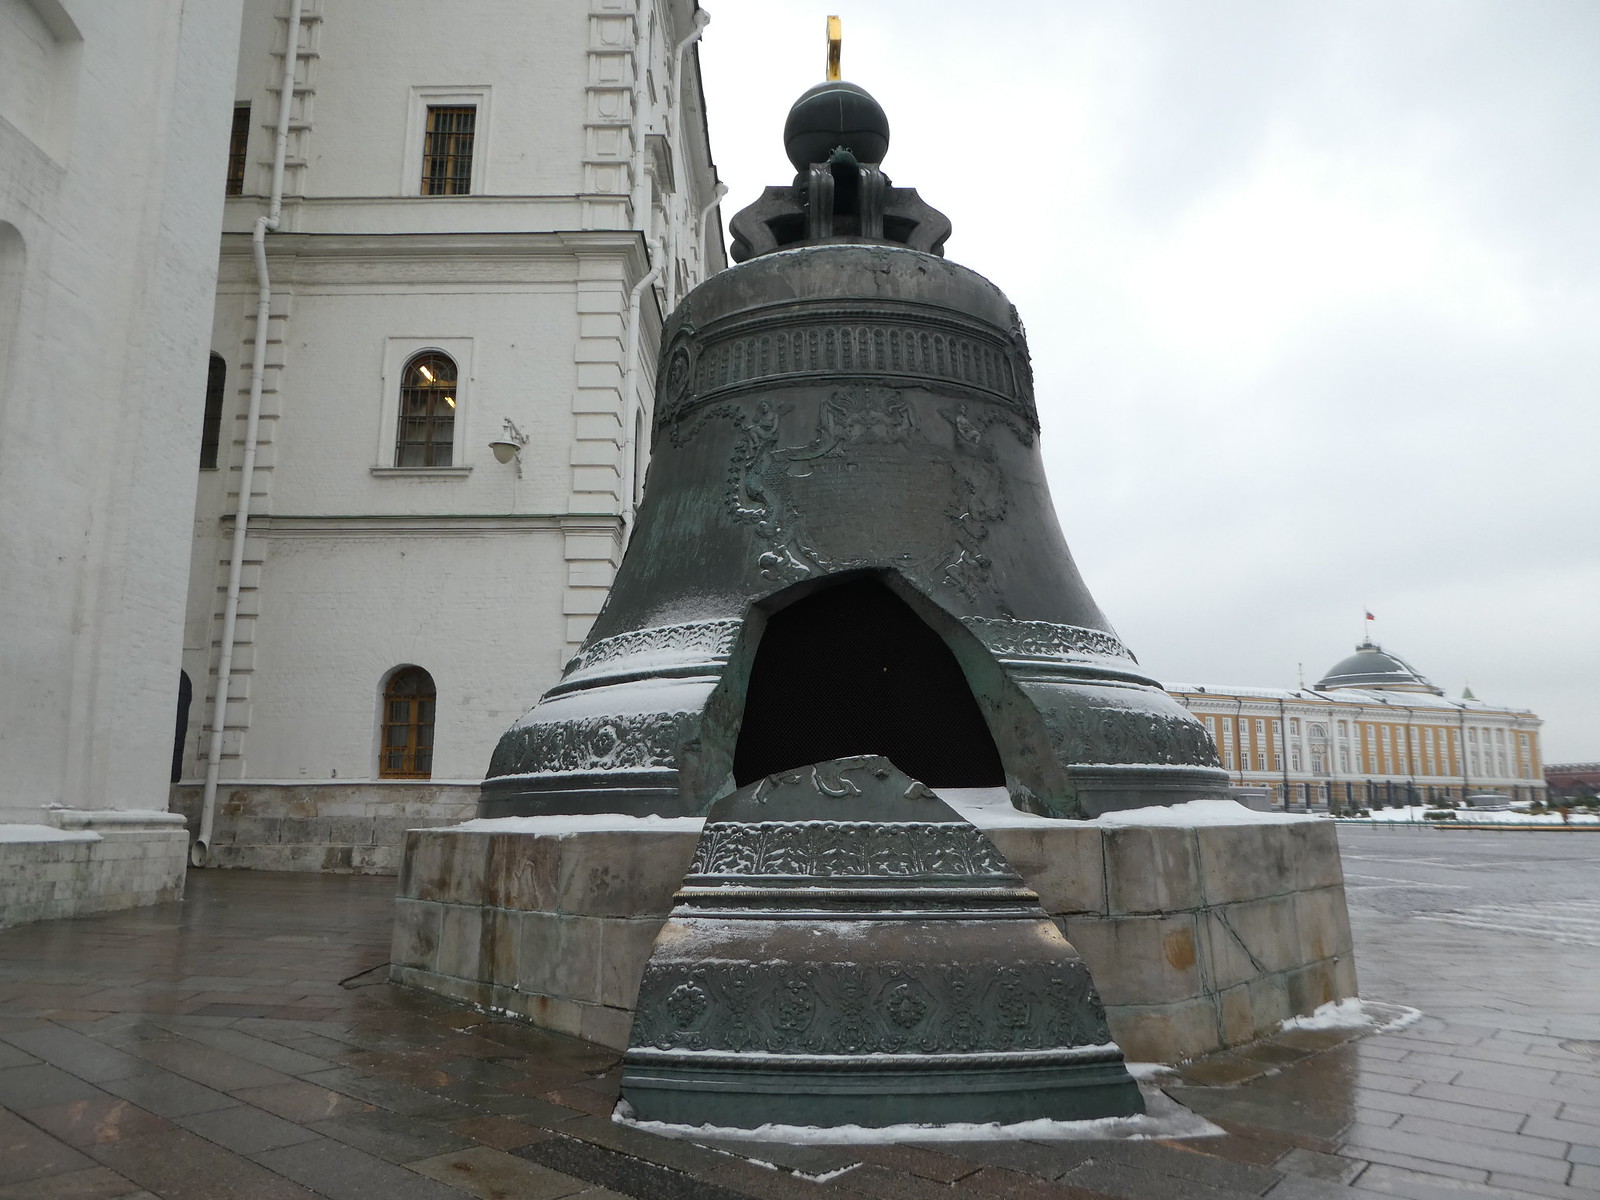 Tsar Bell, The Kremlin